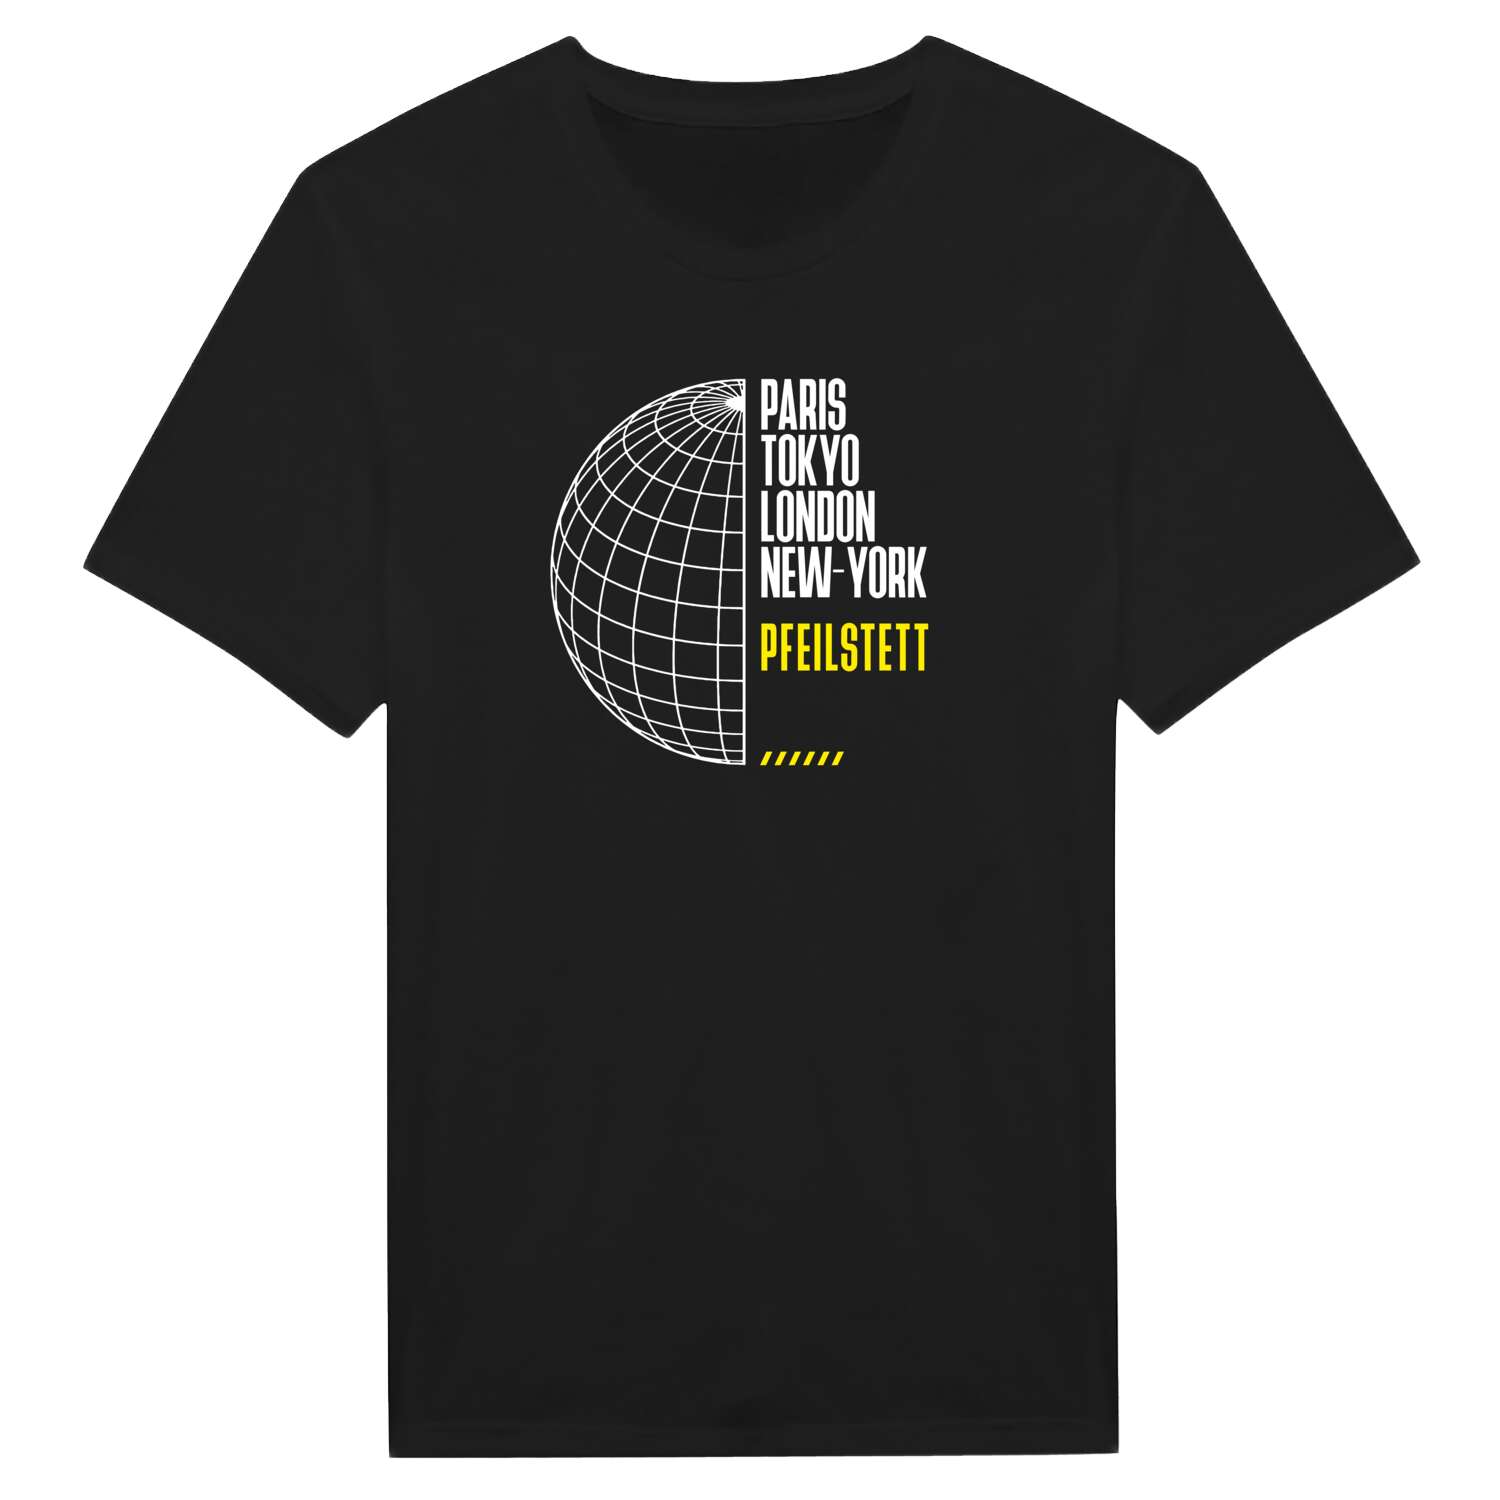 Pfeilstett T-Shirt »Paris Tokyo London«